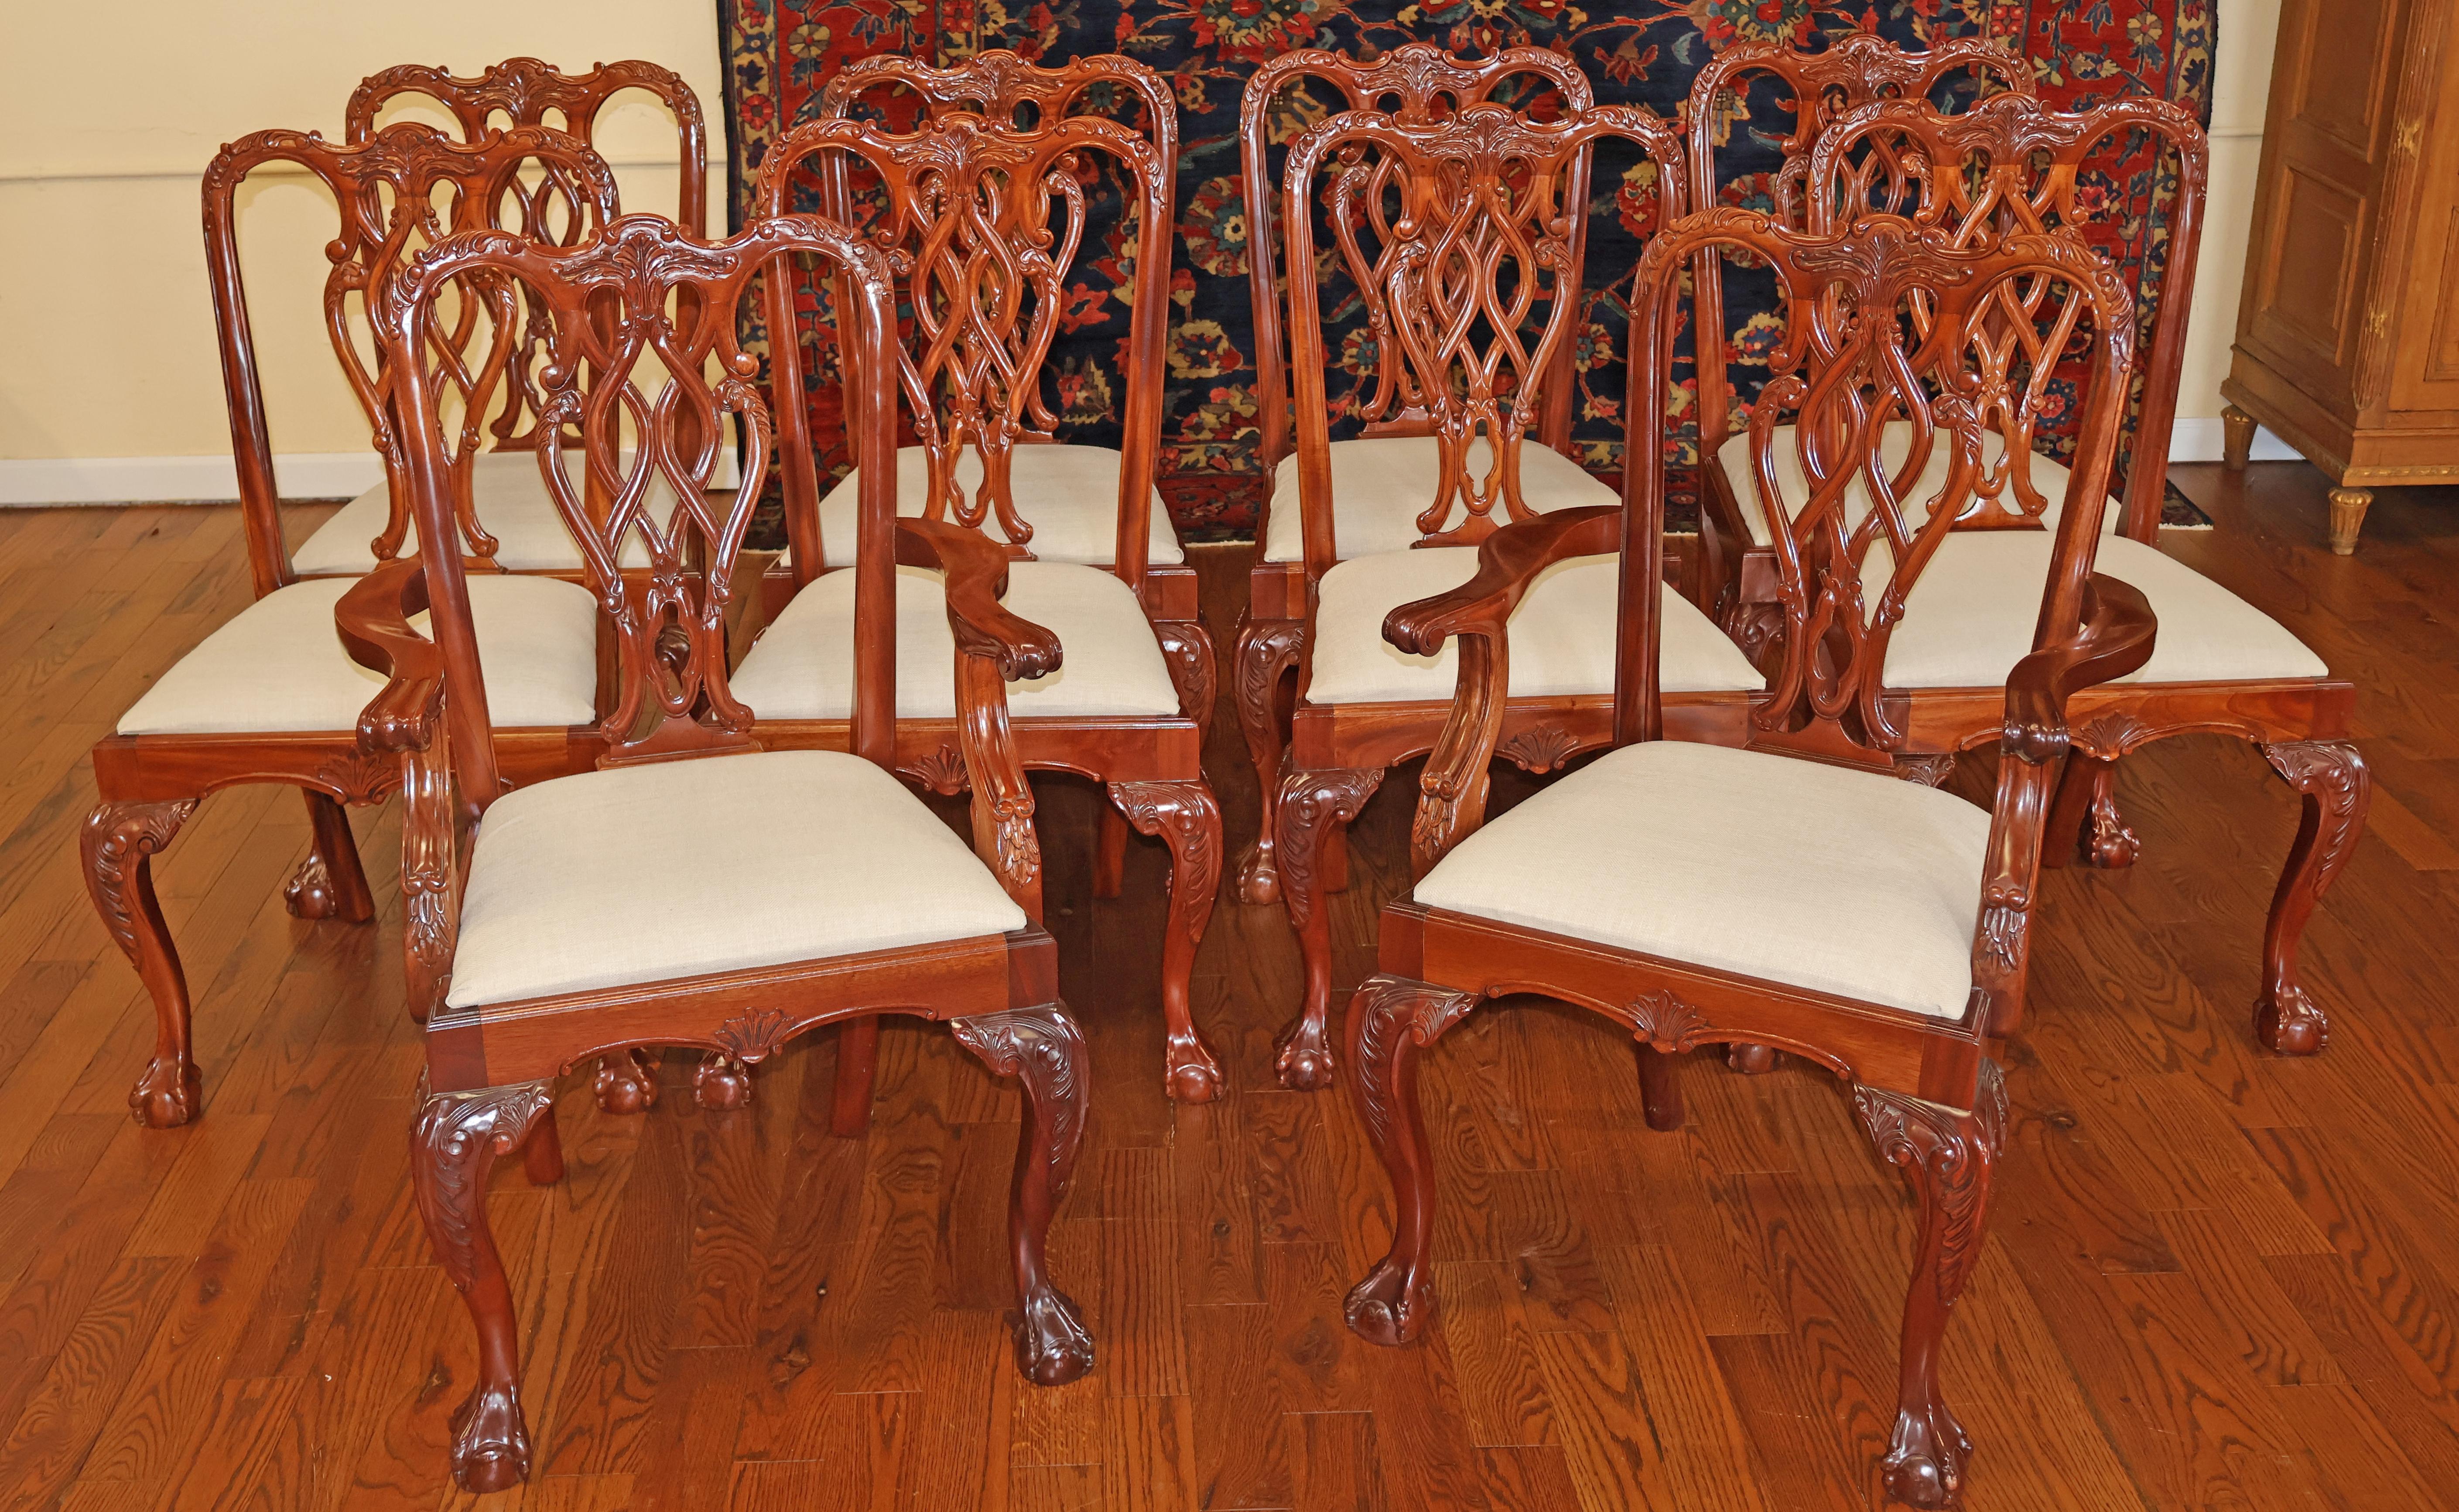 Satz von 10 Esszimmerstühlen aus Mahagoni im Chippendale-Stil mit Kugel- und Krallenfuß

Abmessungen: Sessel - 40